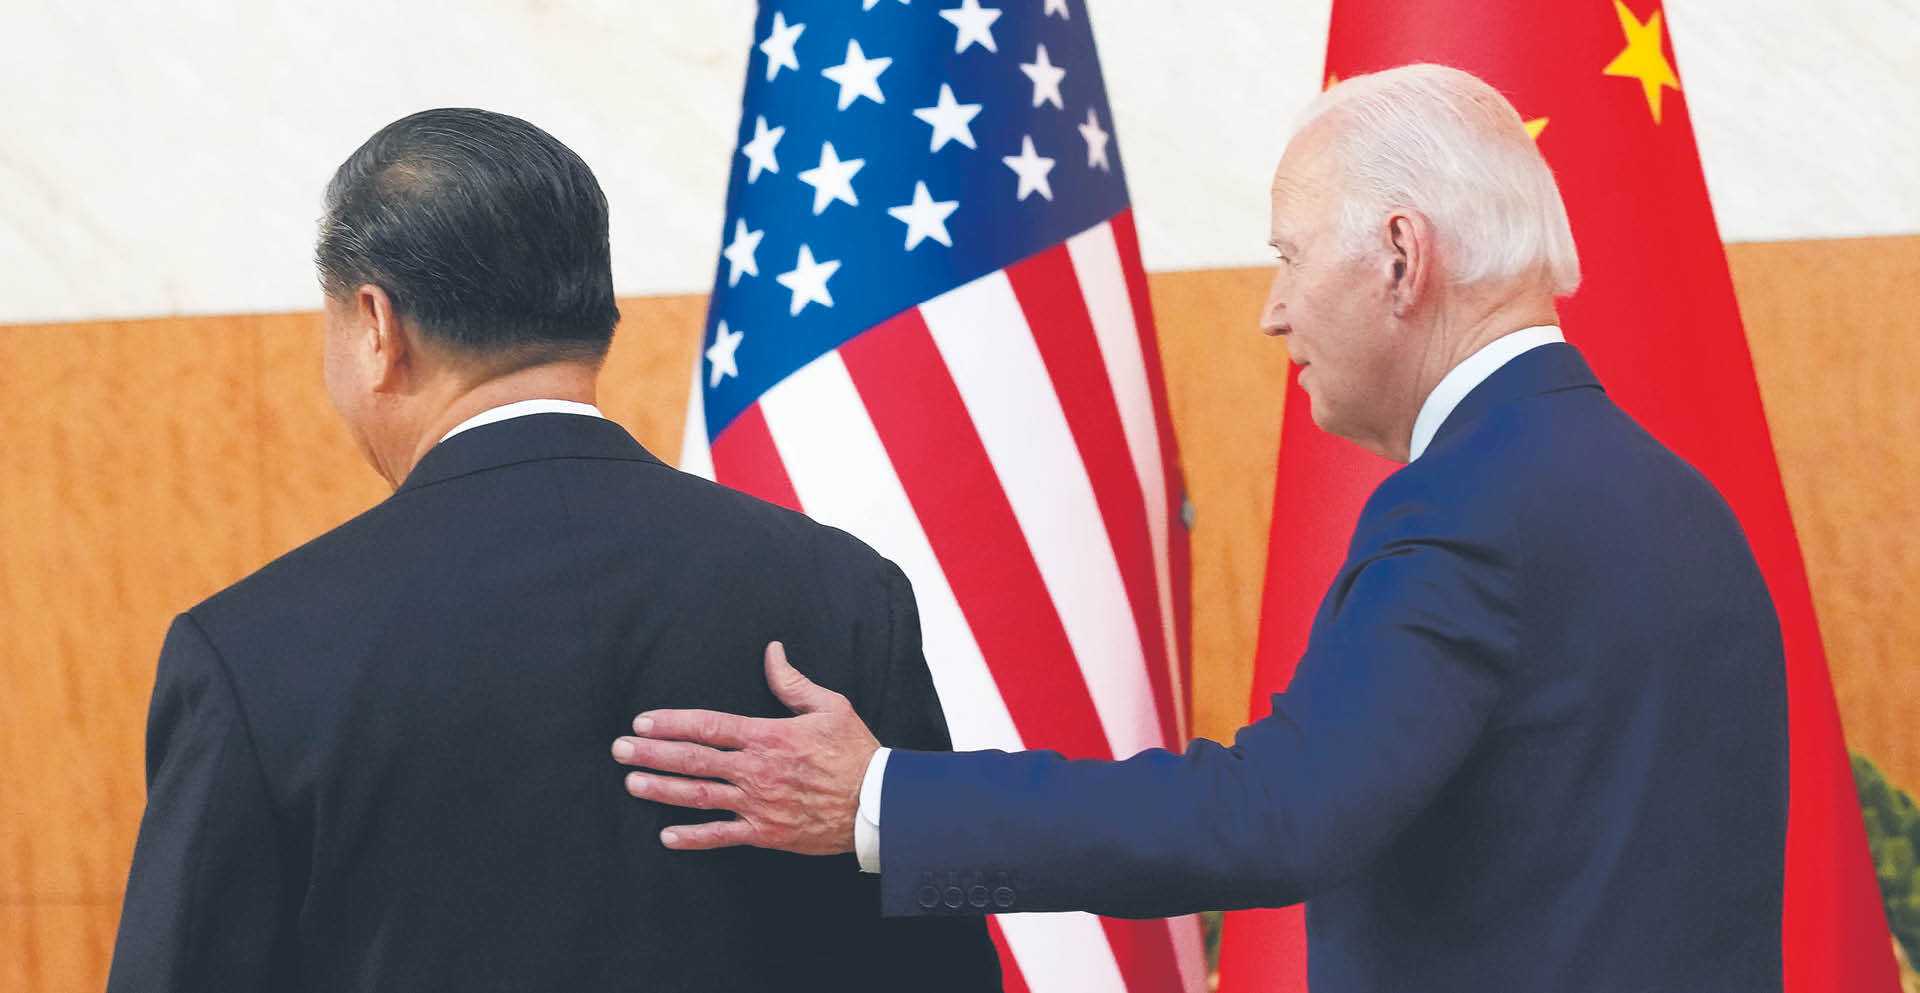 Joe Biden i Xi Jinping, omawiając kwestię gróźb użycia broni atomowej w rosyjskiej inwazji na Ukrainę, zgodzili się, że nie można dopuścić do wojny jądrowej. Pekin opowiedział się za rozwiązaniem konfliktu w drodze rozmów pokojowych